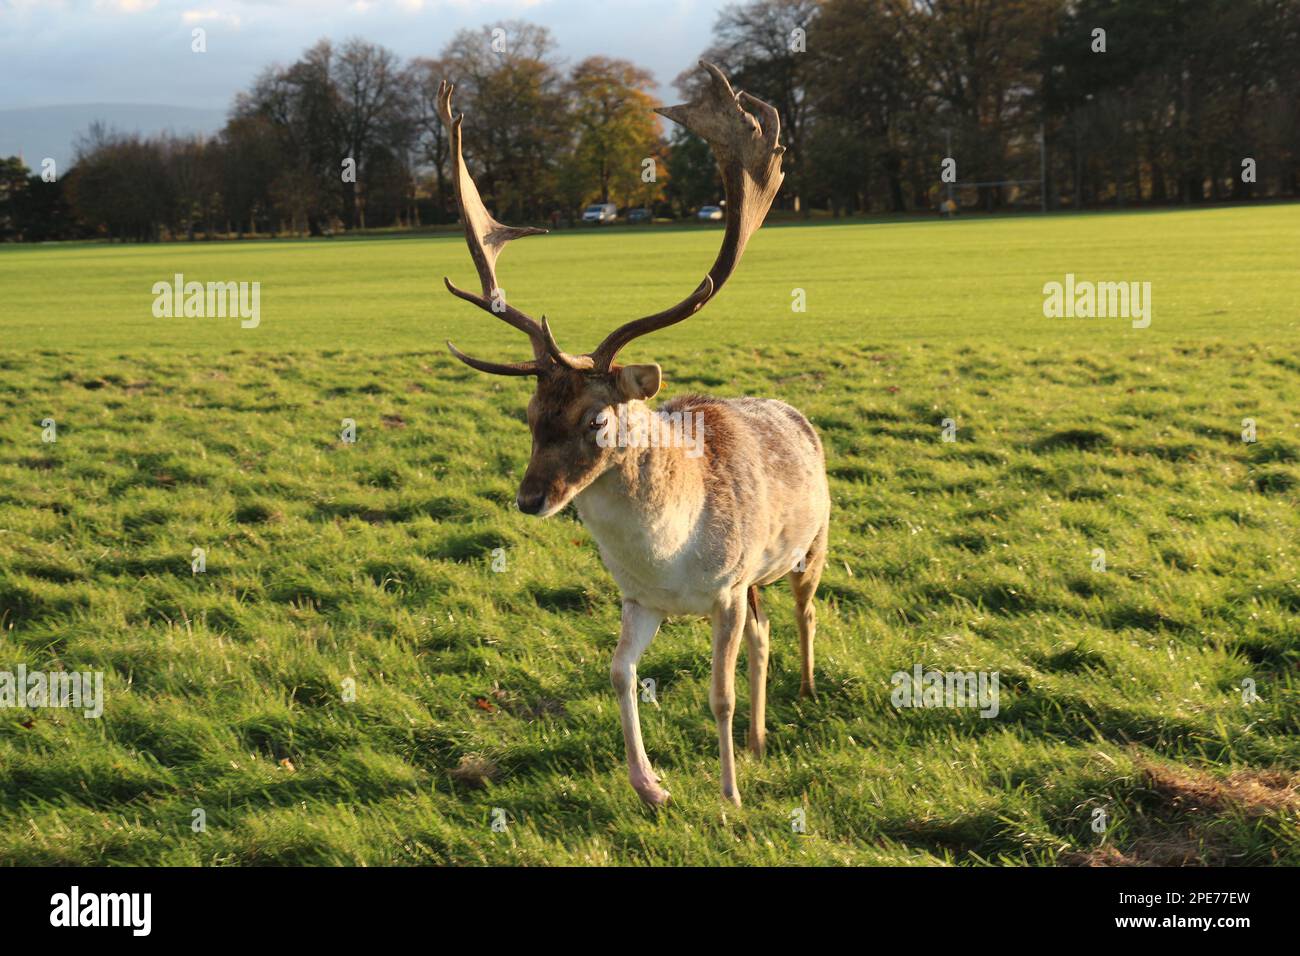 Inmitten der ruhigen Schönheit eines irischen Parks steht und spielt ein anmutiger Hirsch, der die heitere Essenz von Irlands fesselnder Tierwelt verkörpert Stockfoto